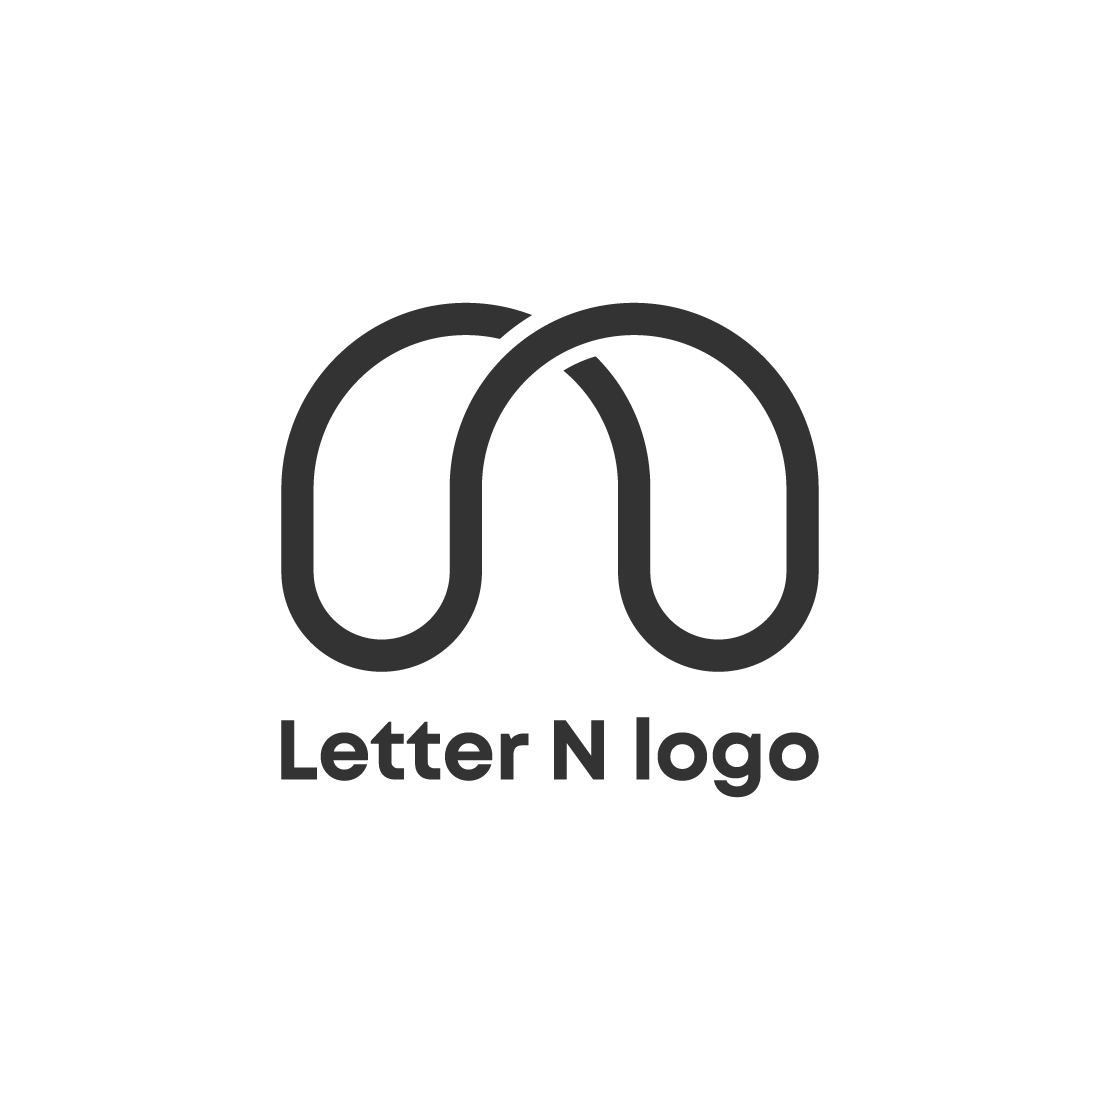 Letter N logo design preview image.